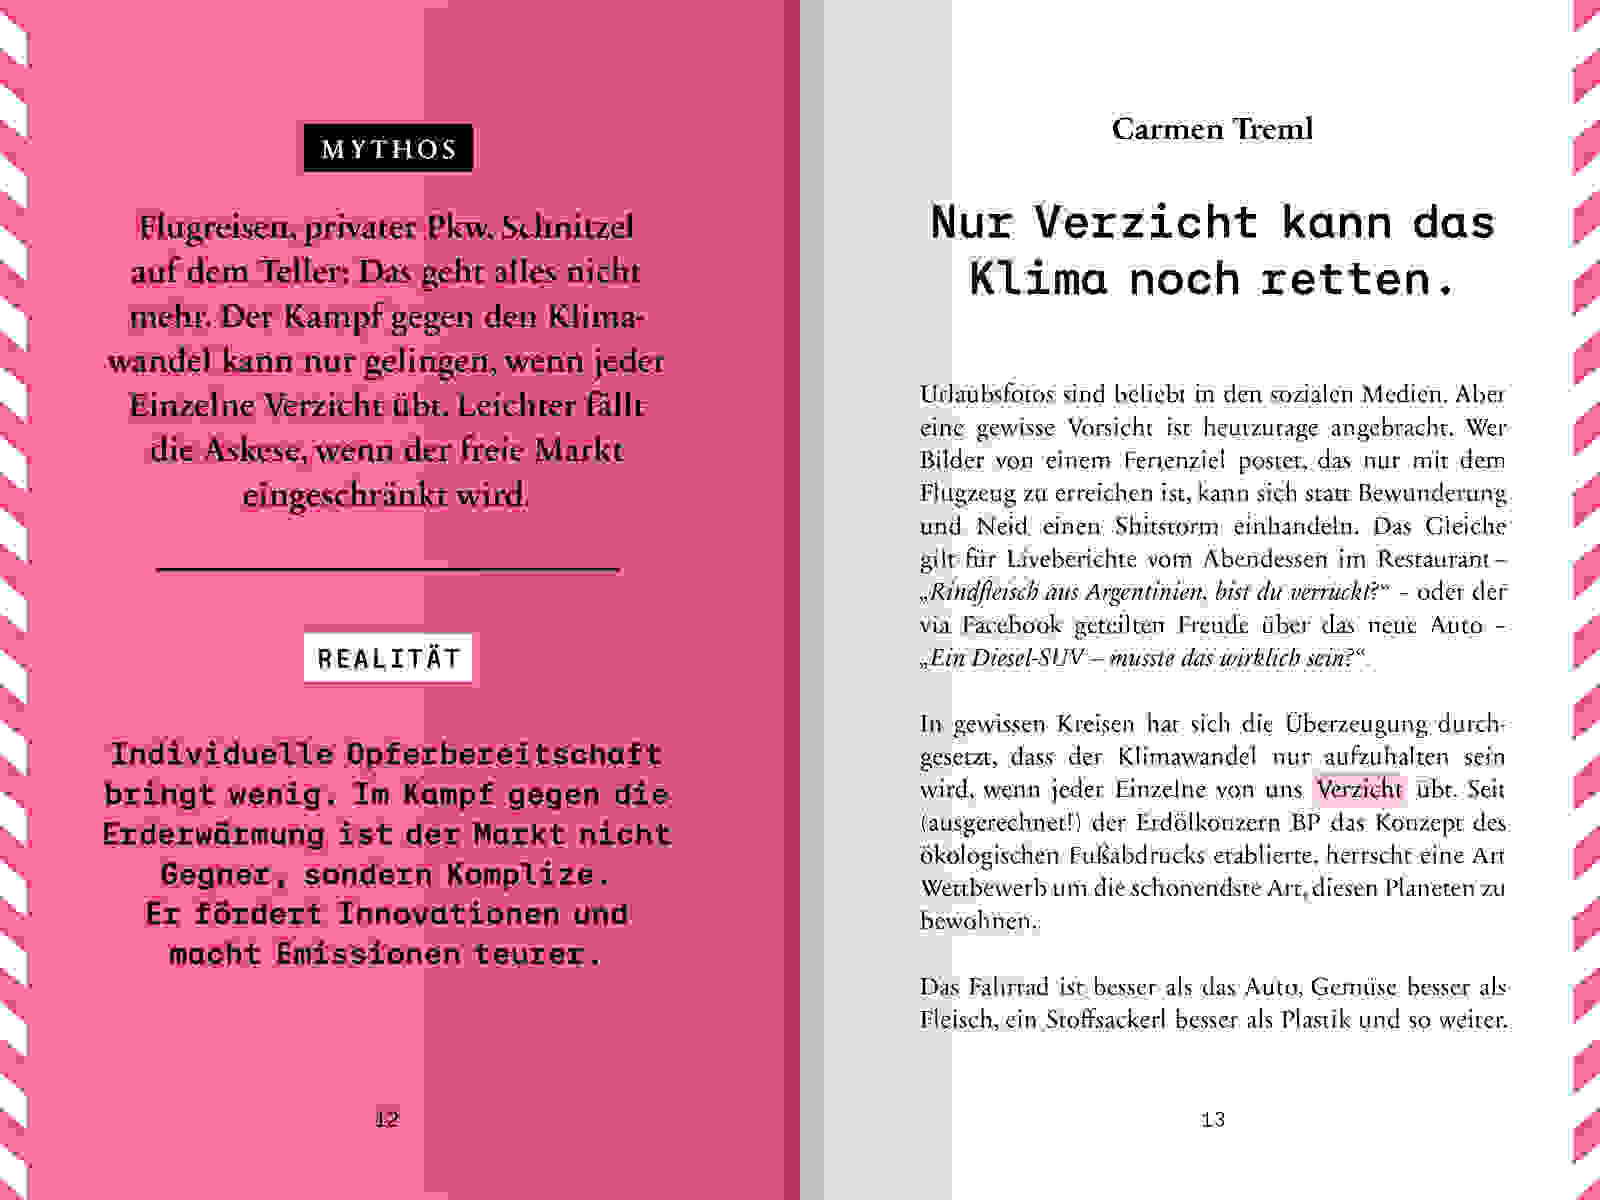 WEB AA Handbuch Wirtschaftsmythen 120x180mm S12 13